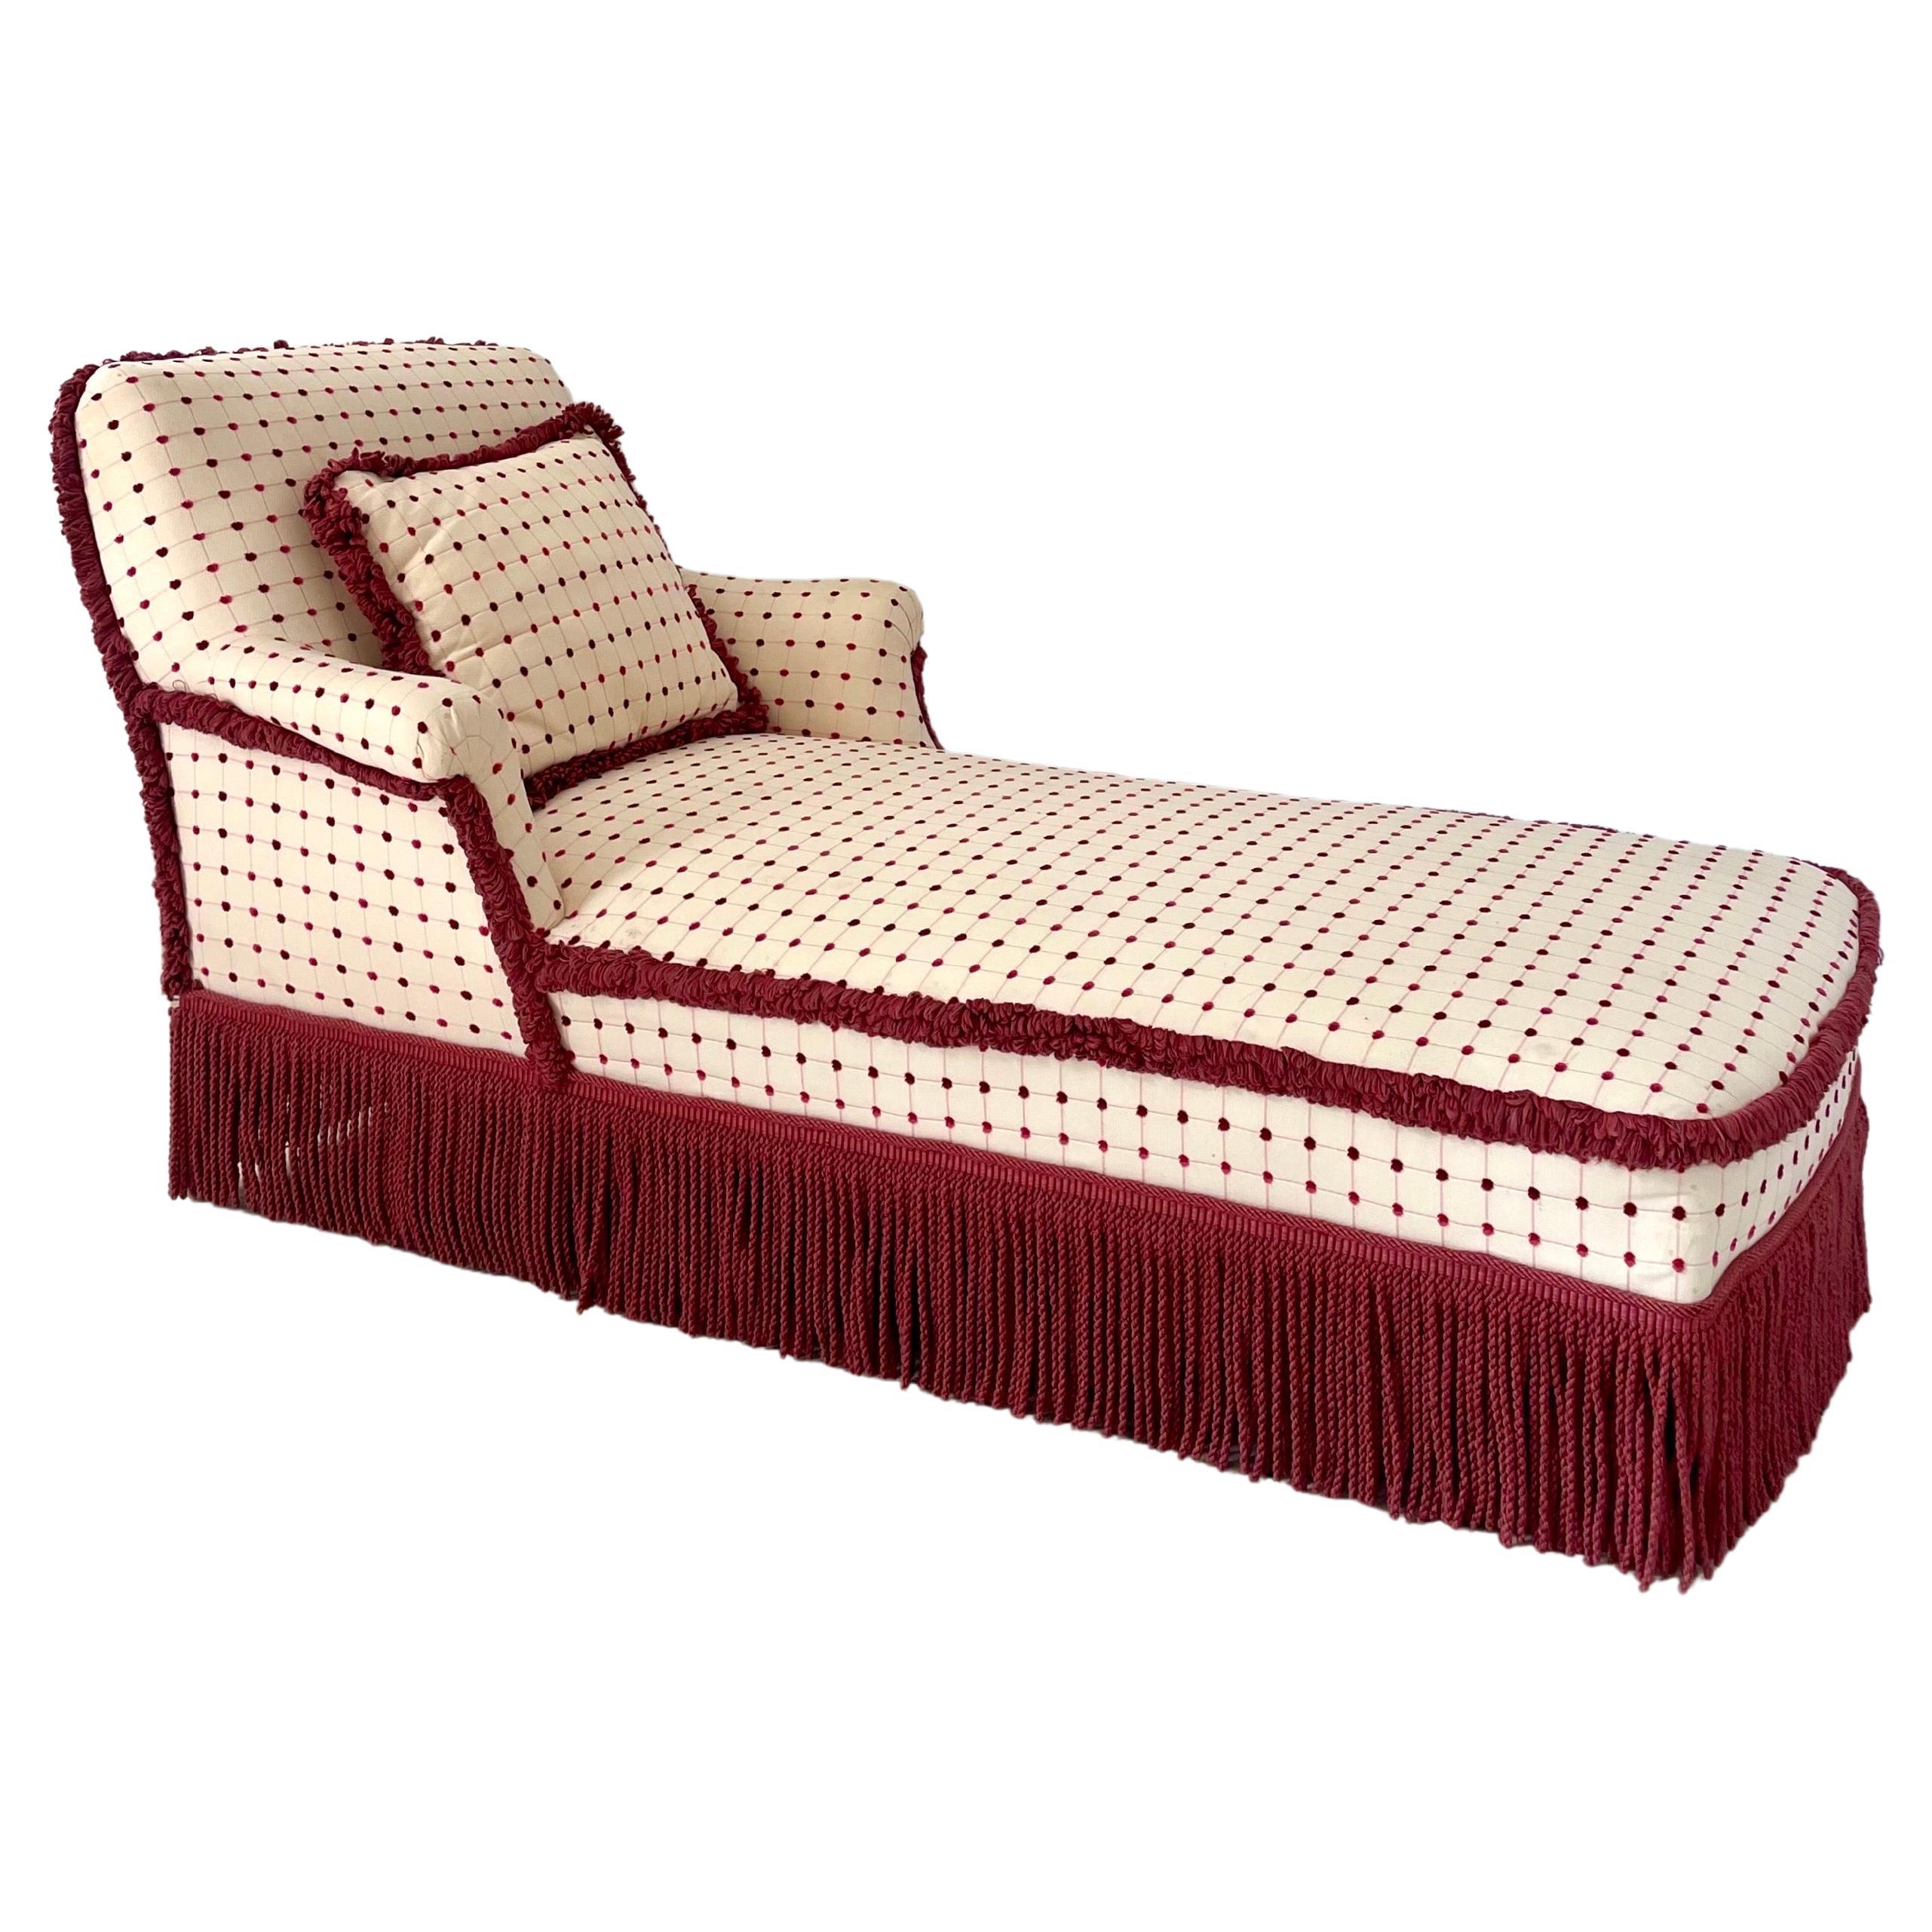 Beautiful Meridian - Daybed - Lounge Chair - Bench mit Burgundy, Himbeerrosa, Off-White-Polsterung.
Prächtiger Meridian aus der Zeit Napoleons III. und des Zweiten Kaiserreichs mit einer breiten, nach außen gewölbten Rückenlehne, die einen sehr